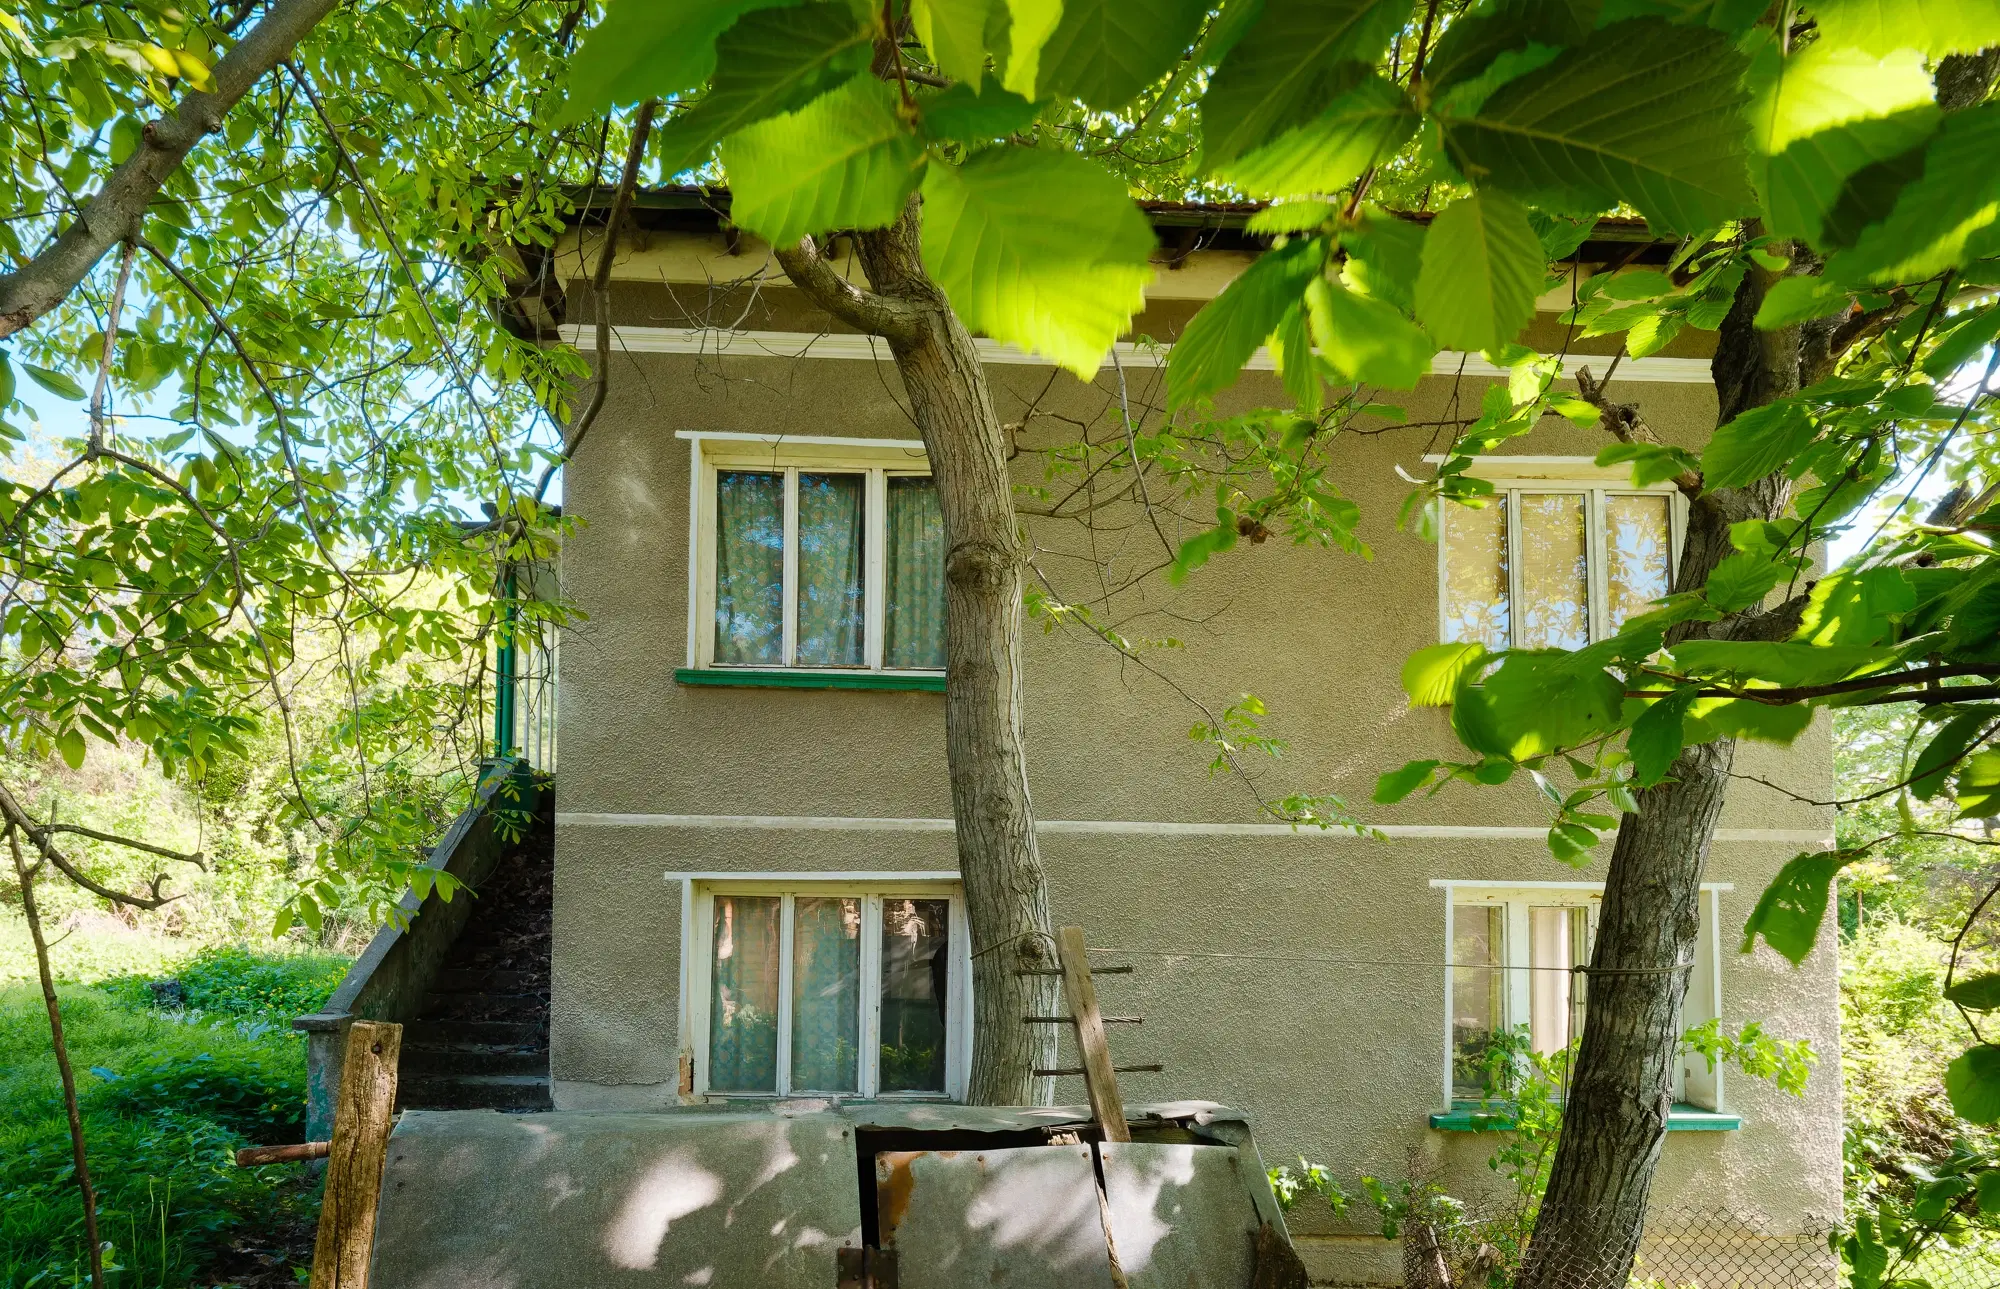 Huis met 2 verdiepingen, 2.000 m2 grond en bijgebouwen in Perilovets - Bulgarije